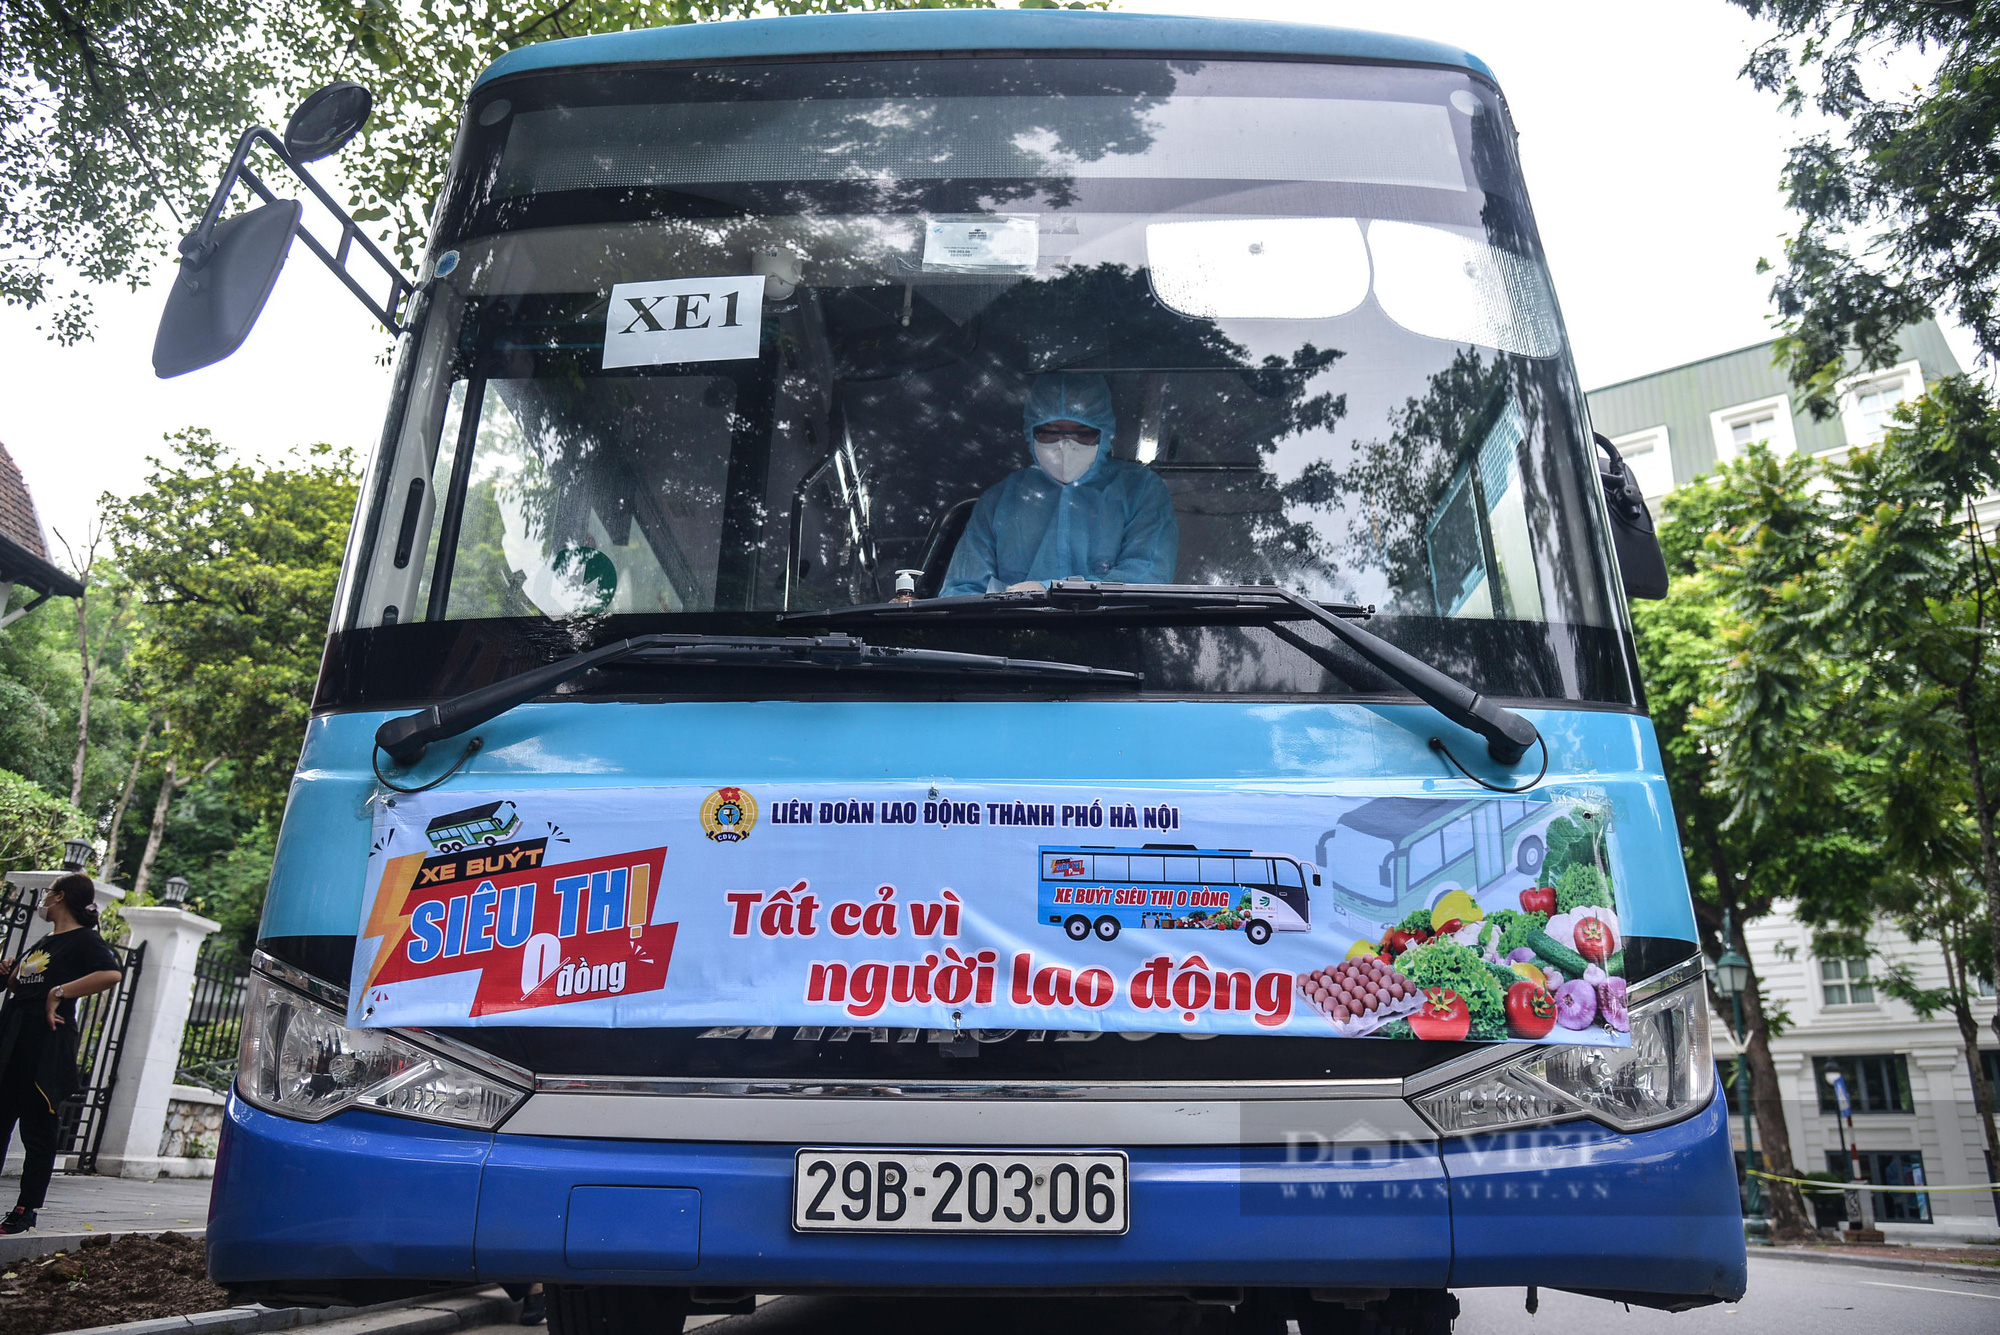 Cận cảnh “Xe buýt siêu thị 0 đồng” đầu tiên phục vụ CNLĐ khu công nghiệp Hà Nội - Ảnh 1.